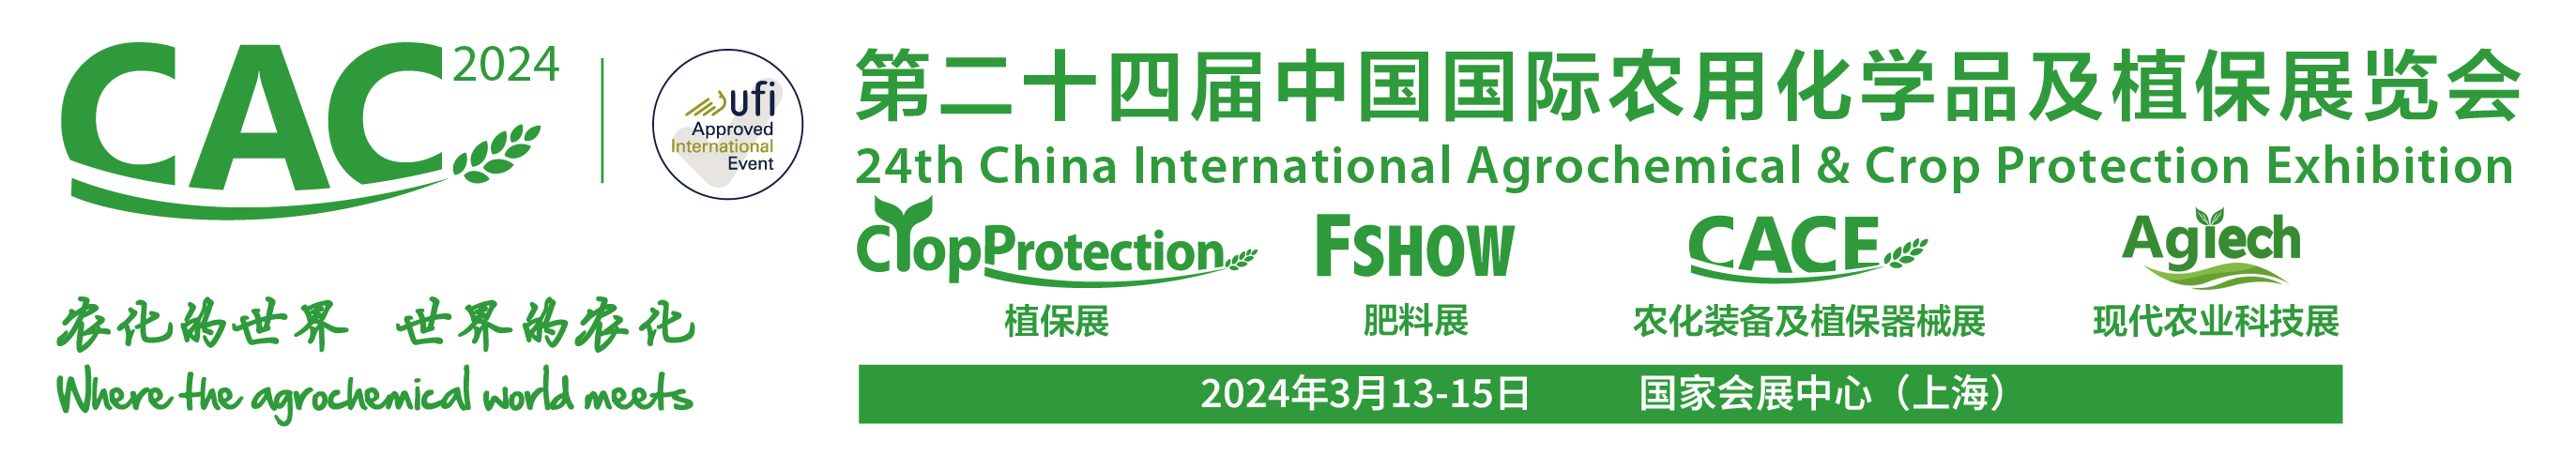 康泰化工将参加第24届中国国际农用化学品及植保展览会（上海CAC展会）(图1)